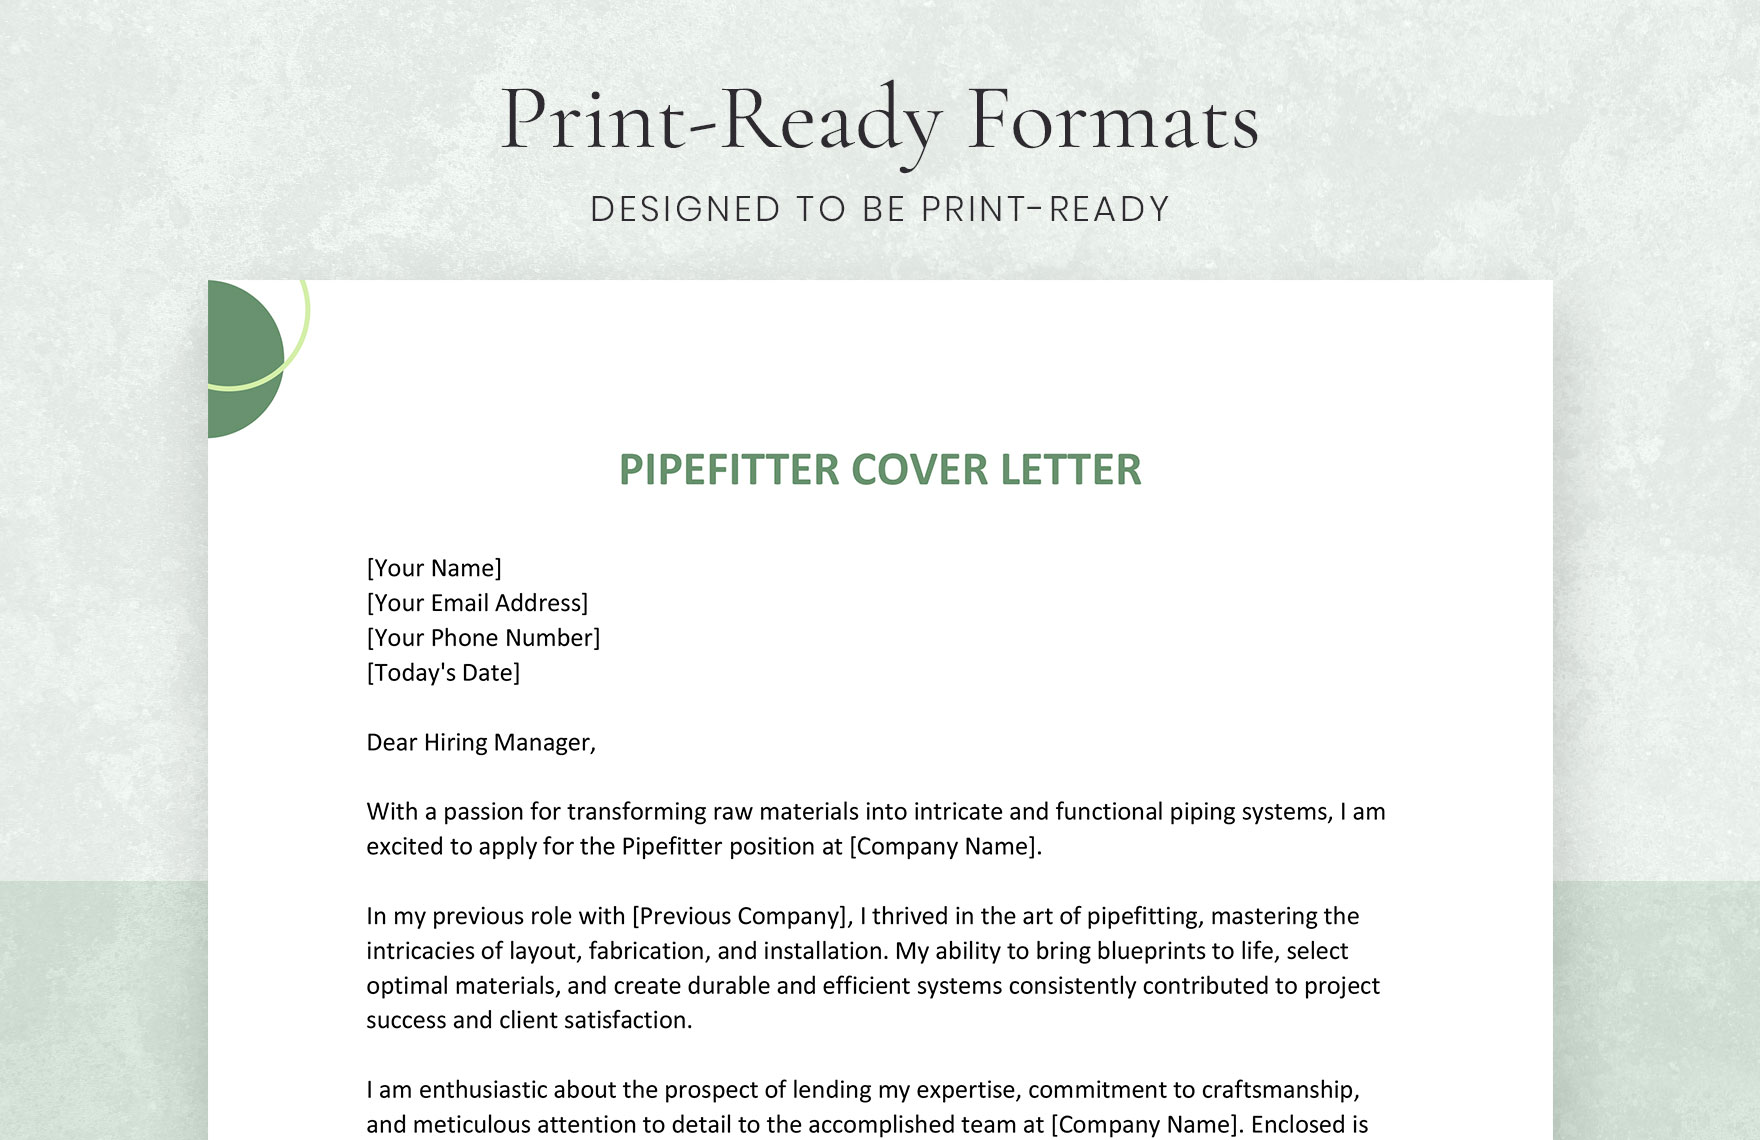 Pipefitter Cover Letter